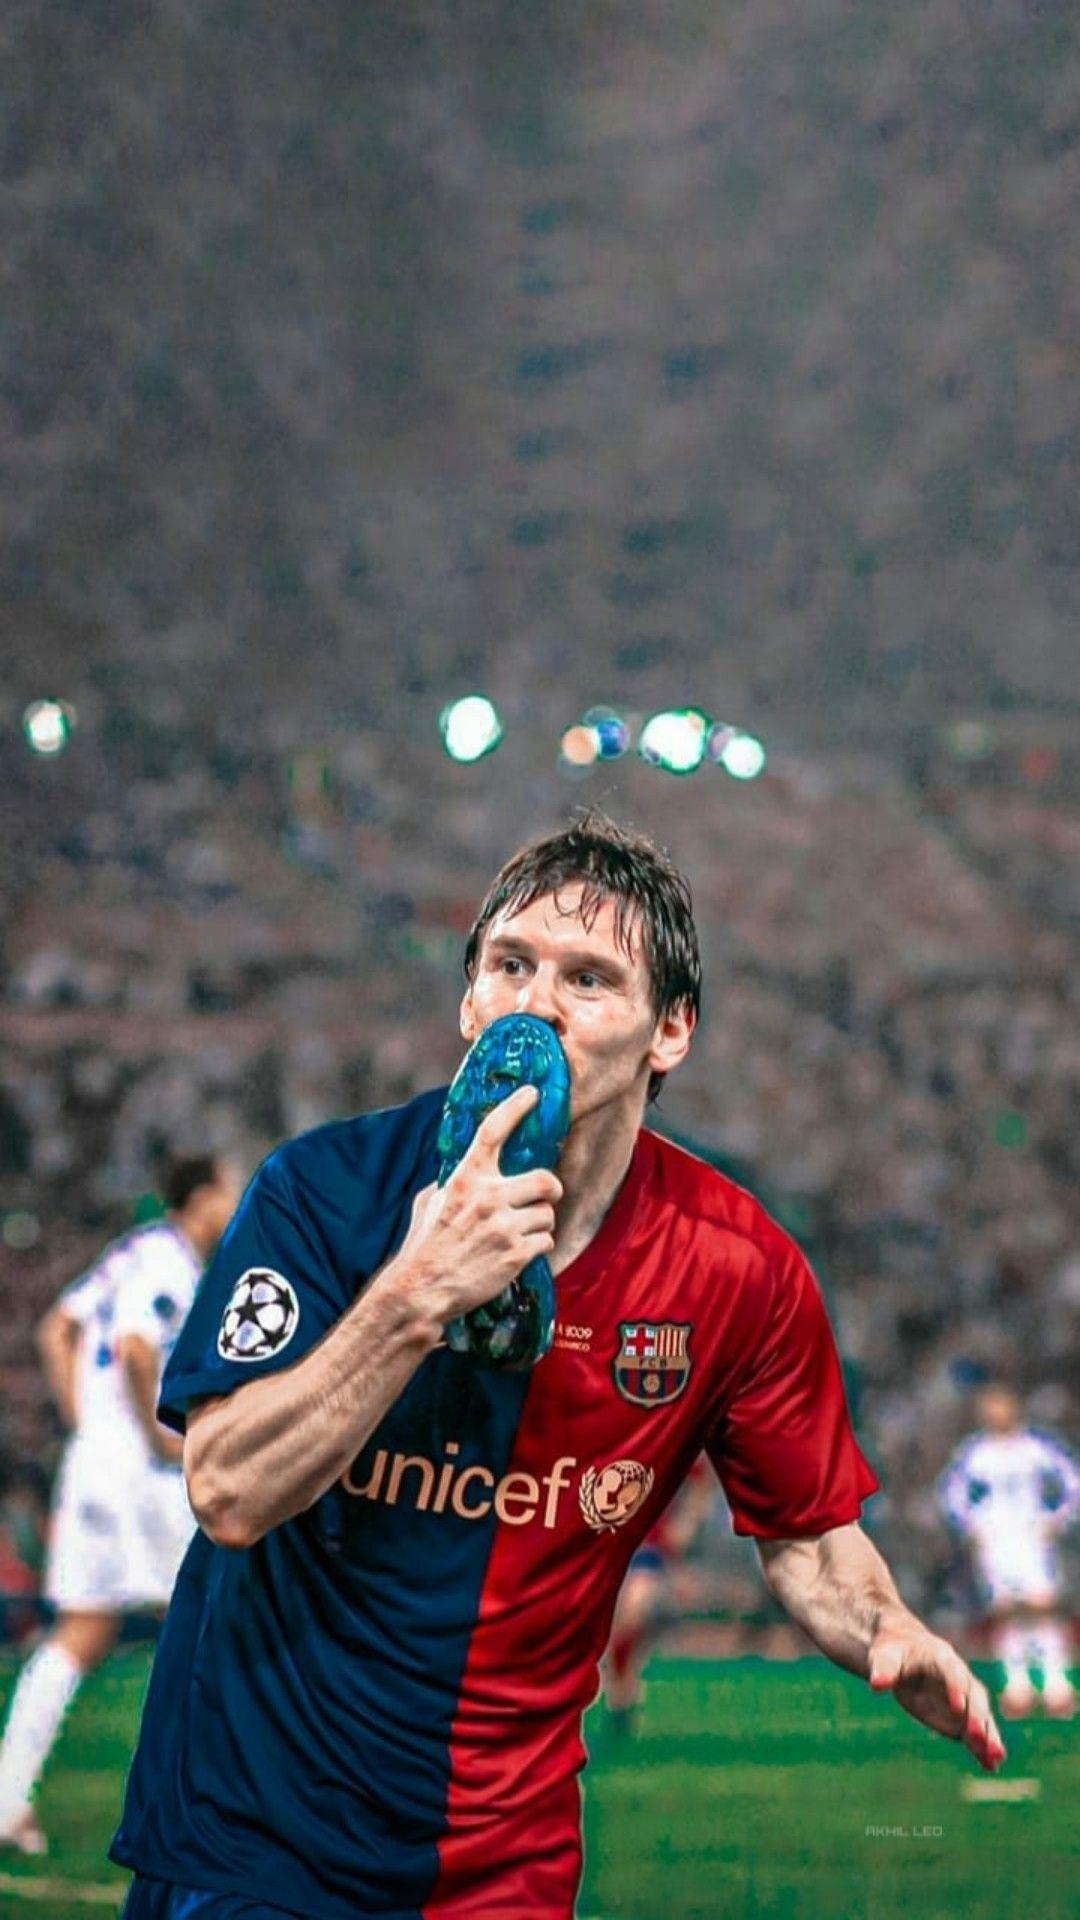 Năm 2009 là một năm đầy hào quang với Lionel Messi. Anh ấy đã giành danh hiệu Quả bóng Vàng và giúp Barcelona giành được 6 danh hiệu trong một mùa giải. Hình ảnh này sẽ đưa bạn trở về thời điểm đó với những pha bóng đẹp mắt và tinh thần chiến đấu mãnh liệt. Xem ngay để tận hưởng!